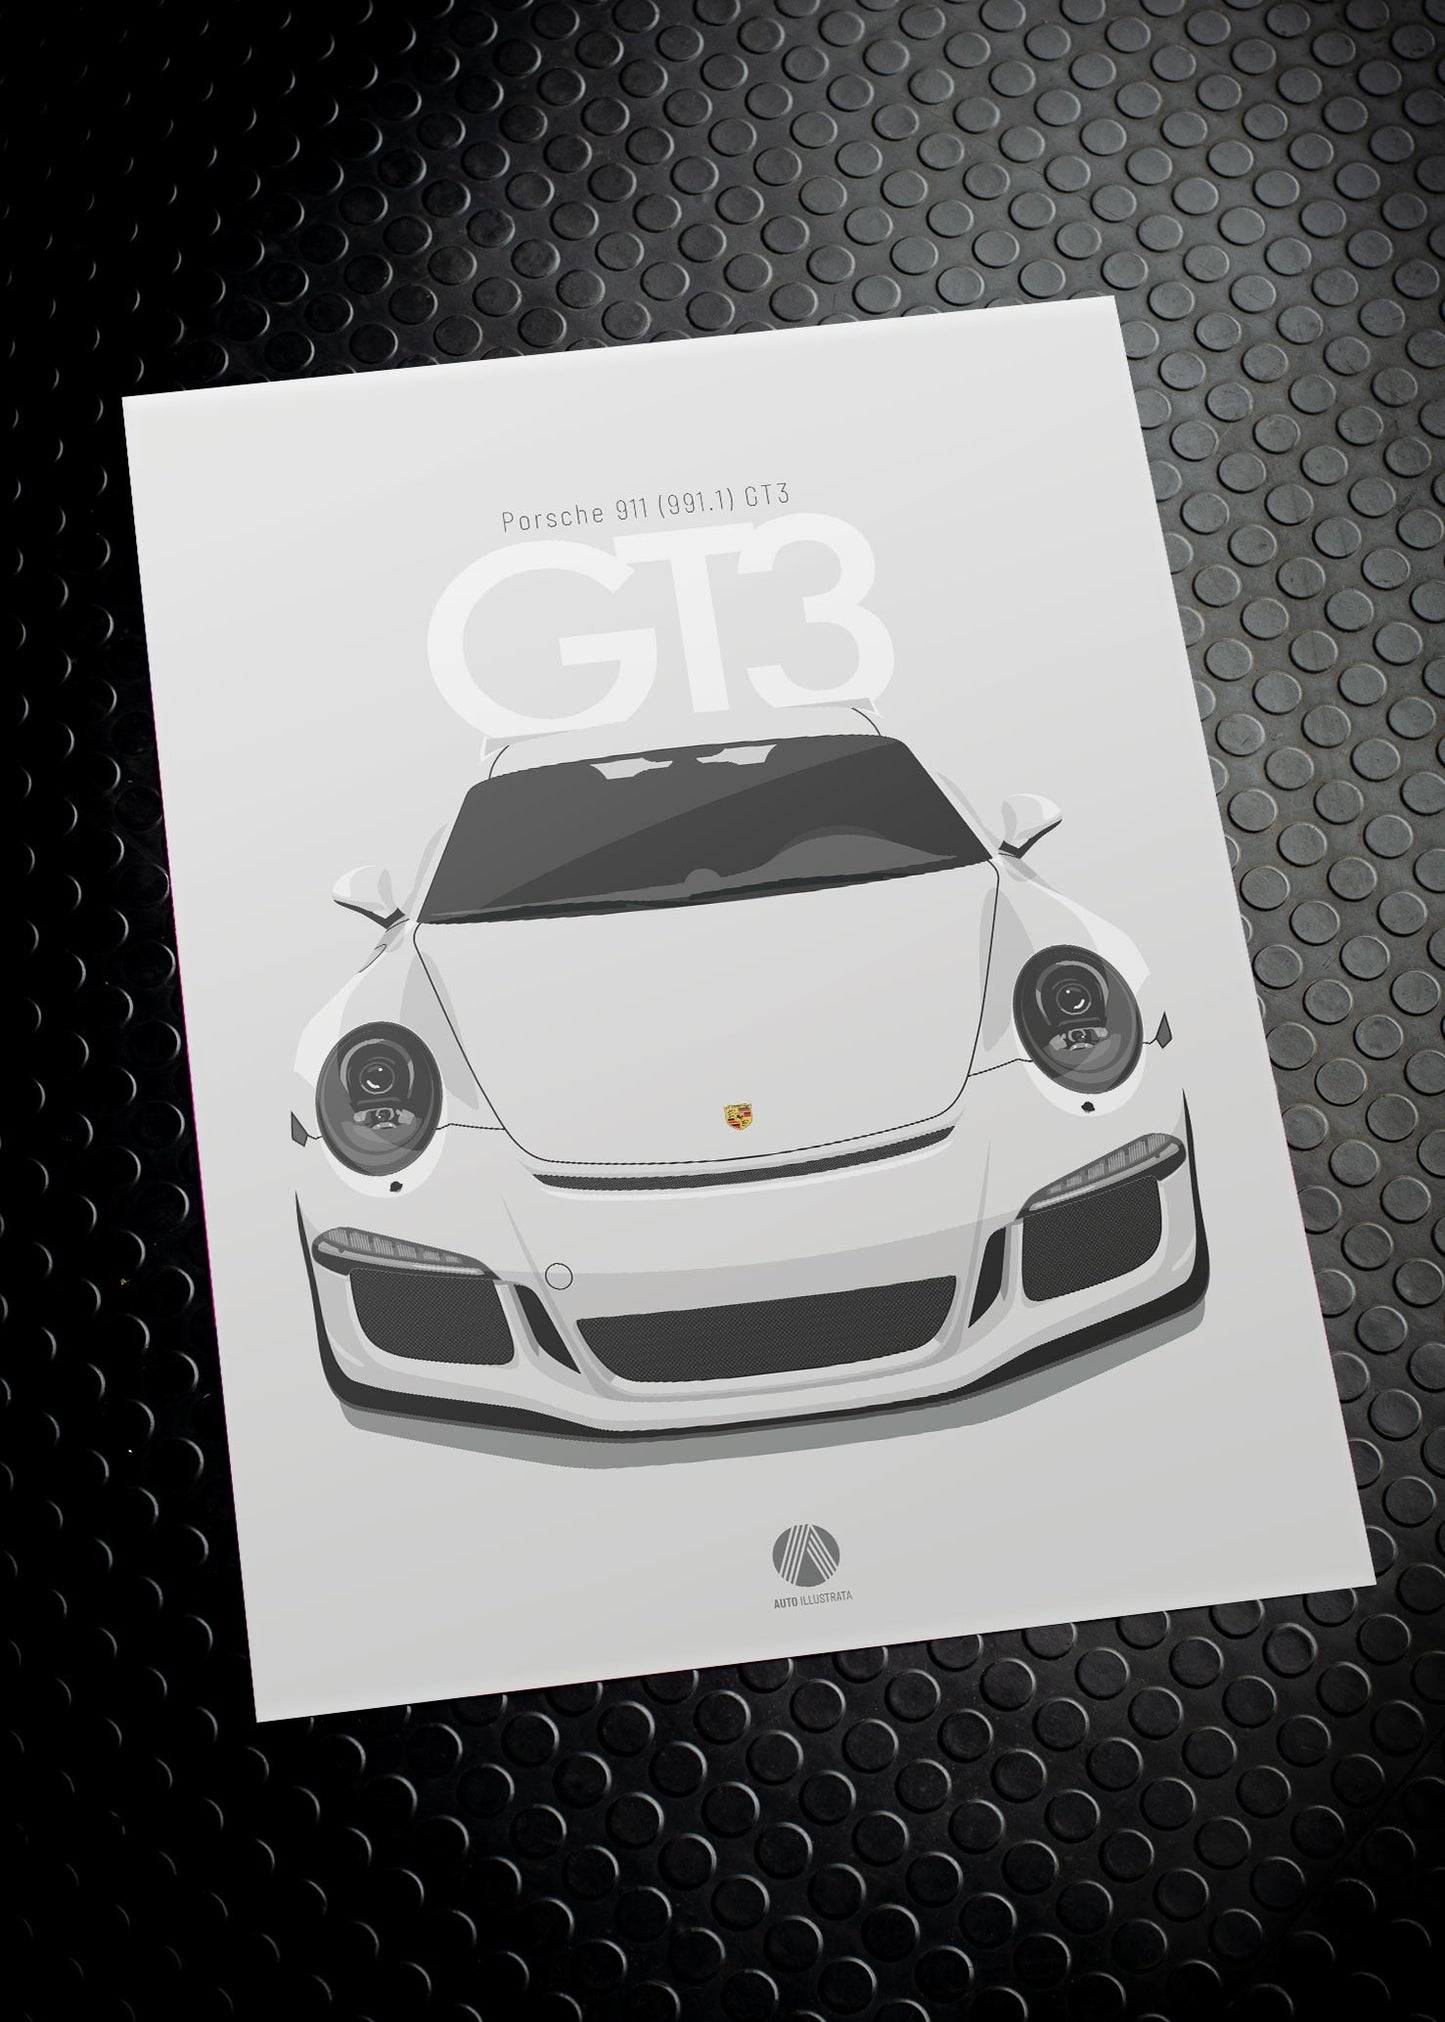 2013 Porsche 911 (991.1) GT3 Carrara White - poster print